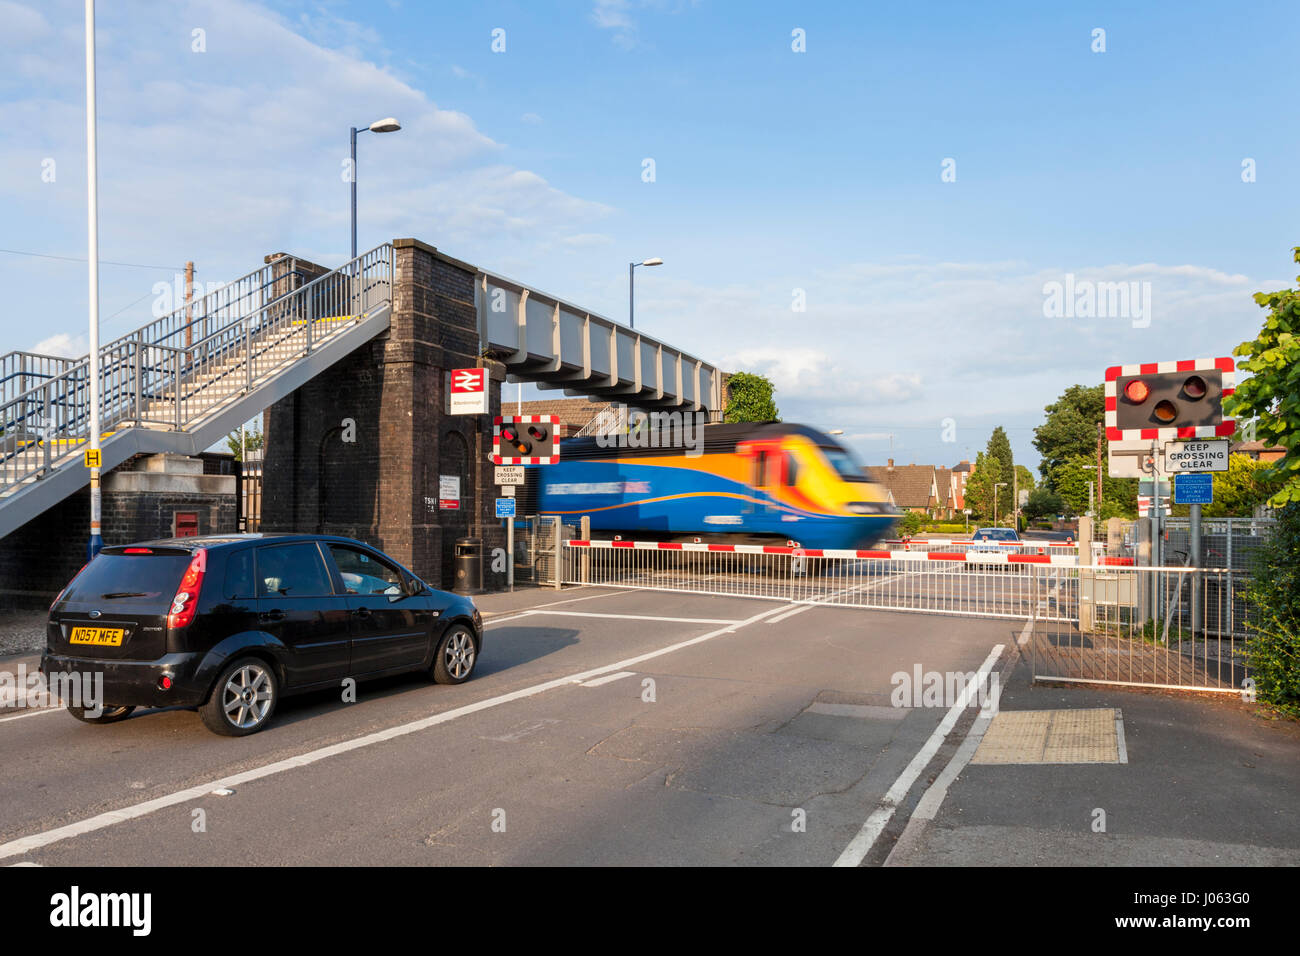 Voitures en attente à un passage à niveau avec les barrières abaissées comme un train passe. Attenborough Gare, Lancashire, England, UK Banque D'Images